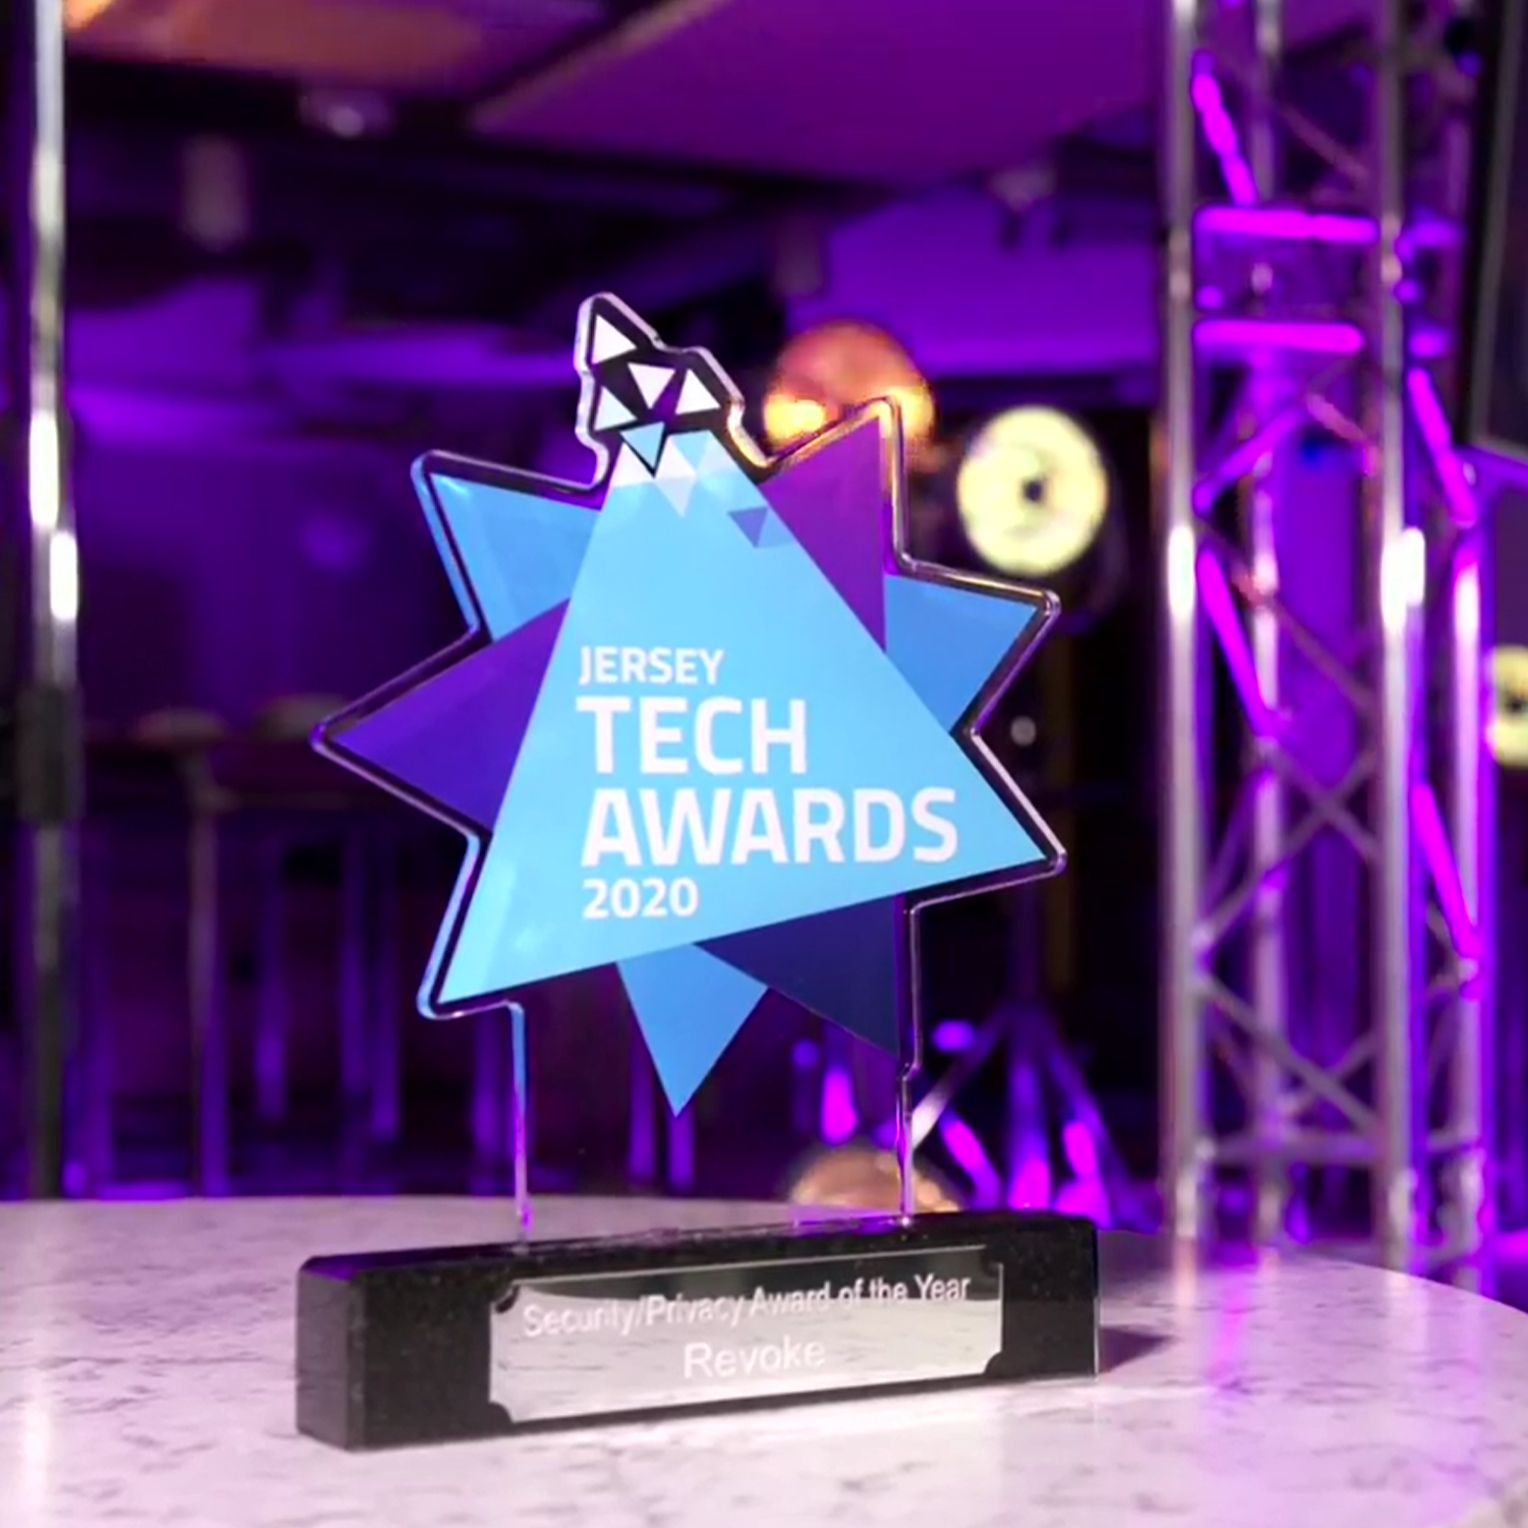 Jersey Tech Awards Double Winners!